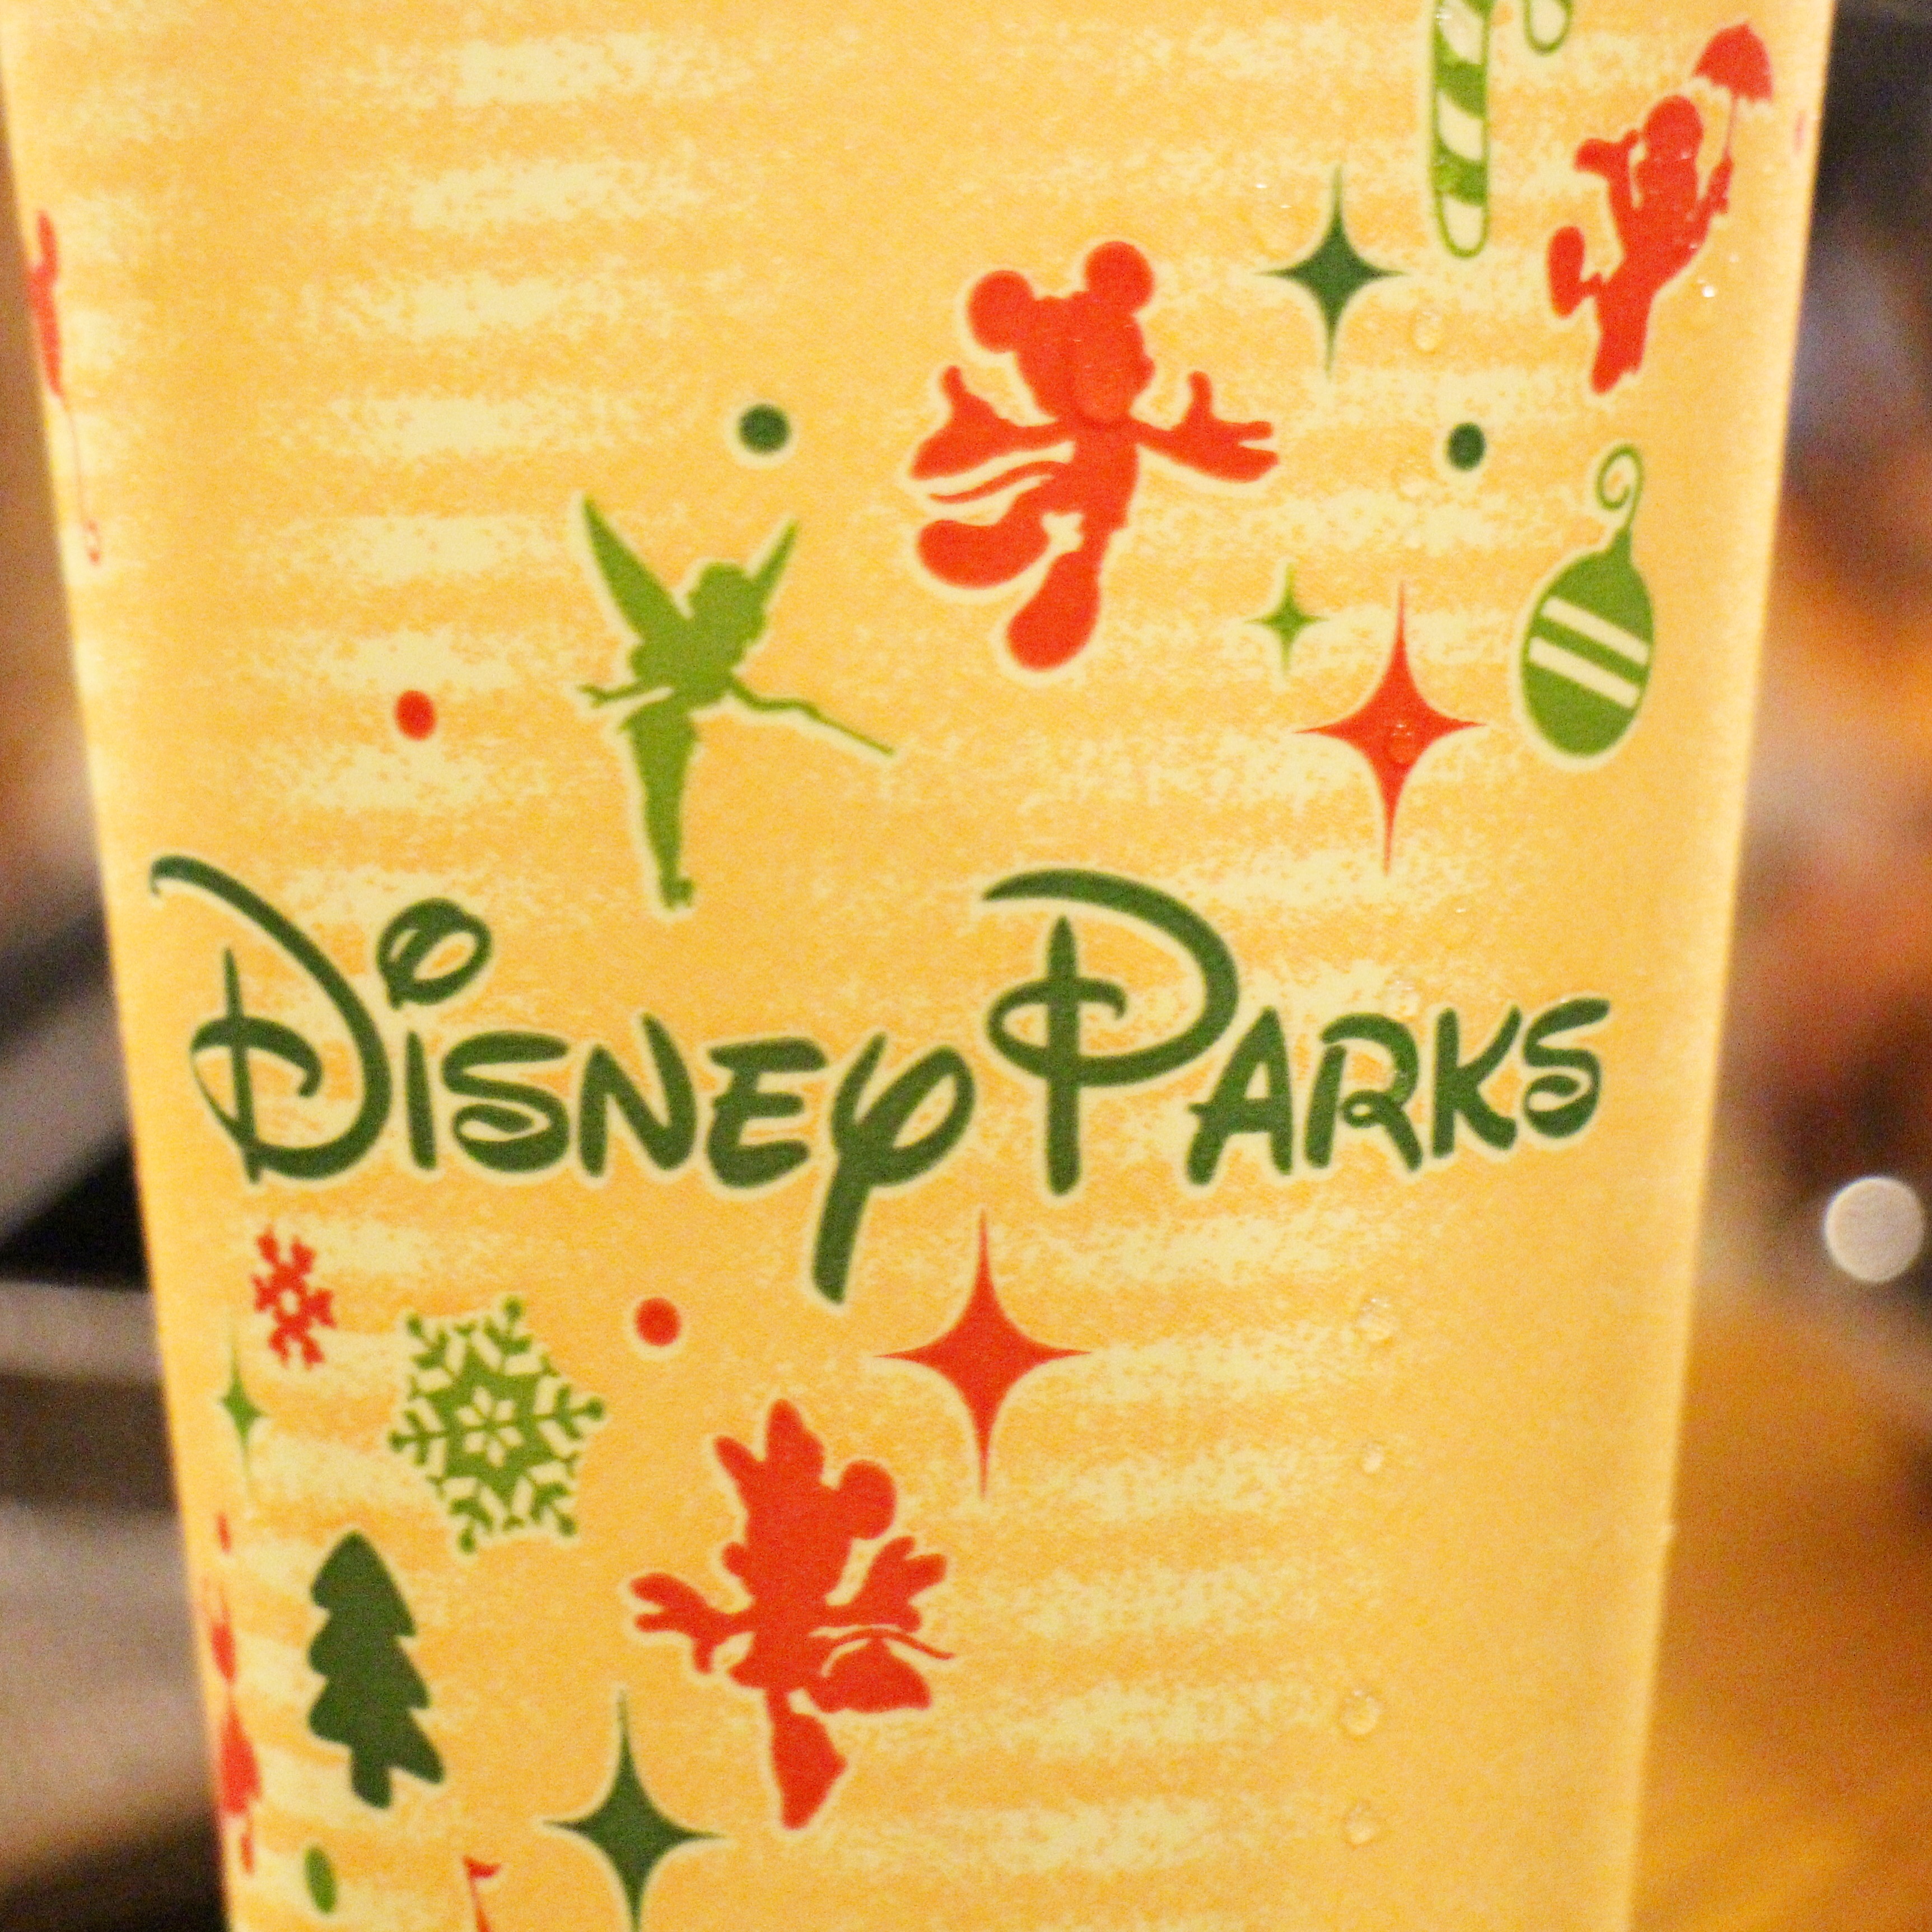 Disney Parks Christmas Cup SparklyEverAfter.com